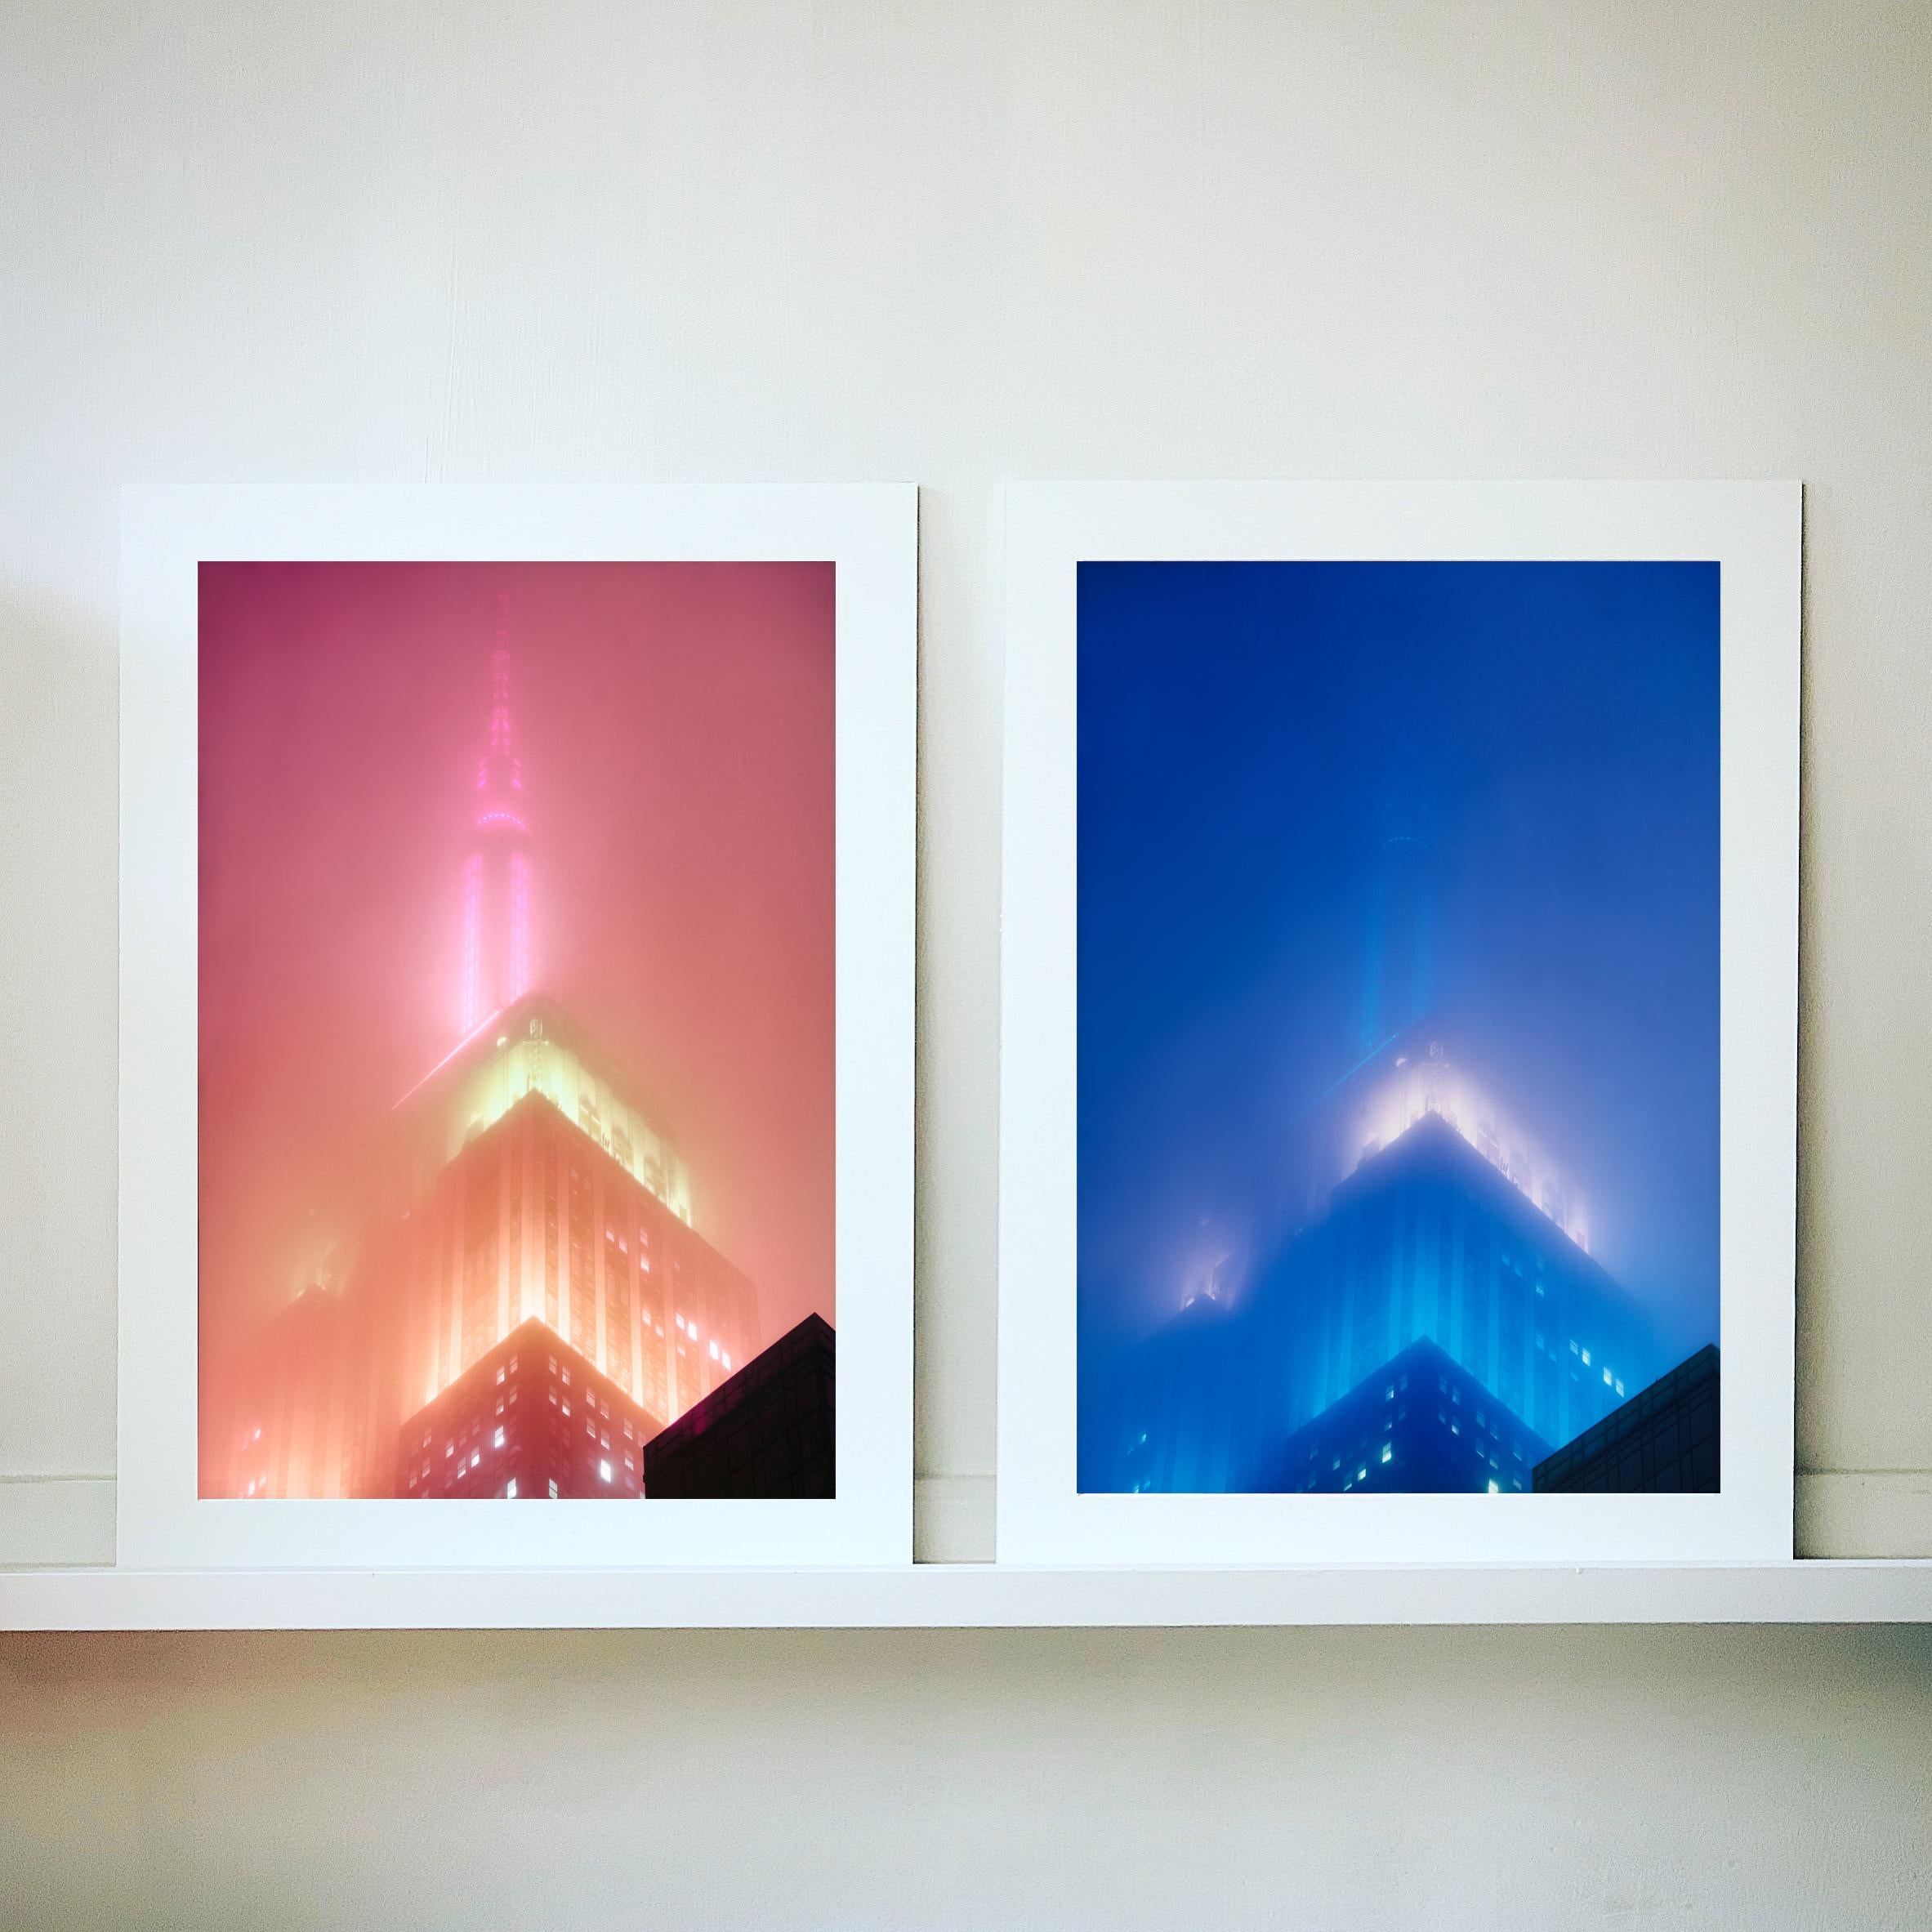 Brandneues Kunstwerk von Richard Heeps, das das ikonische Empire State Building im Nebel zeigt. Es wurde 2017 in New York City fotografiert und im Februar 2019 in seiner Dunkelkammer ausgedruckt
Dieses Kunstwerk ist Teil von Richards Portfolio von